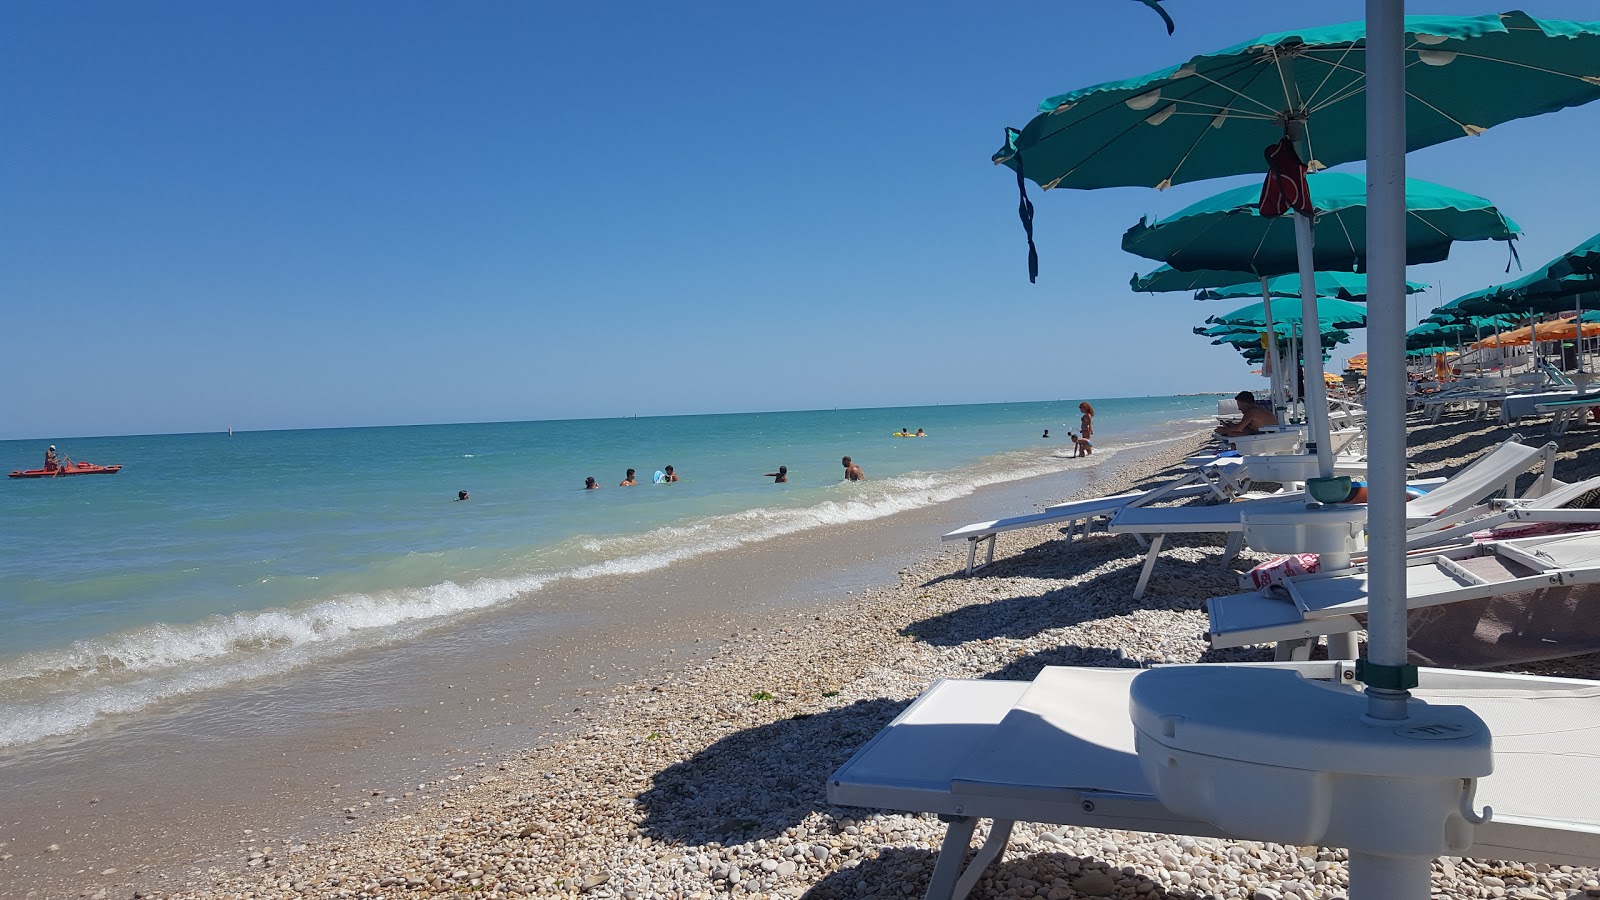 Orfeo Serafini'in fotoğrafı plaj tatil beldesi alanı